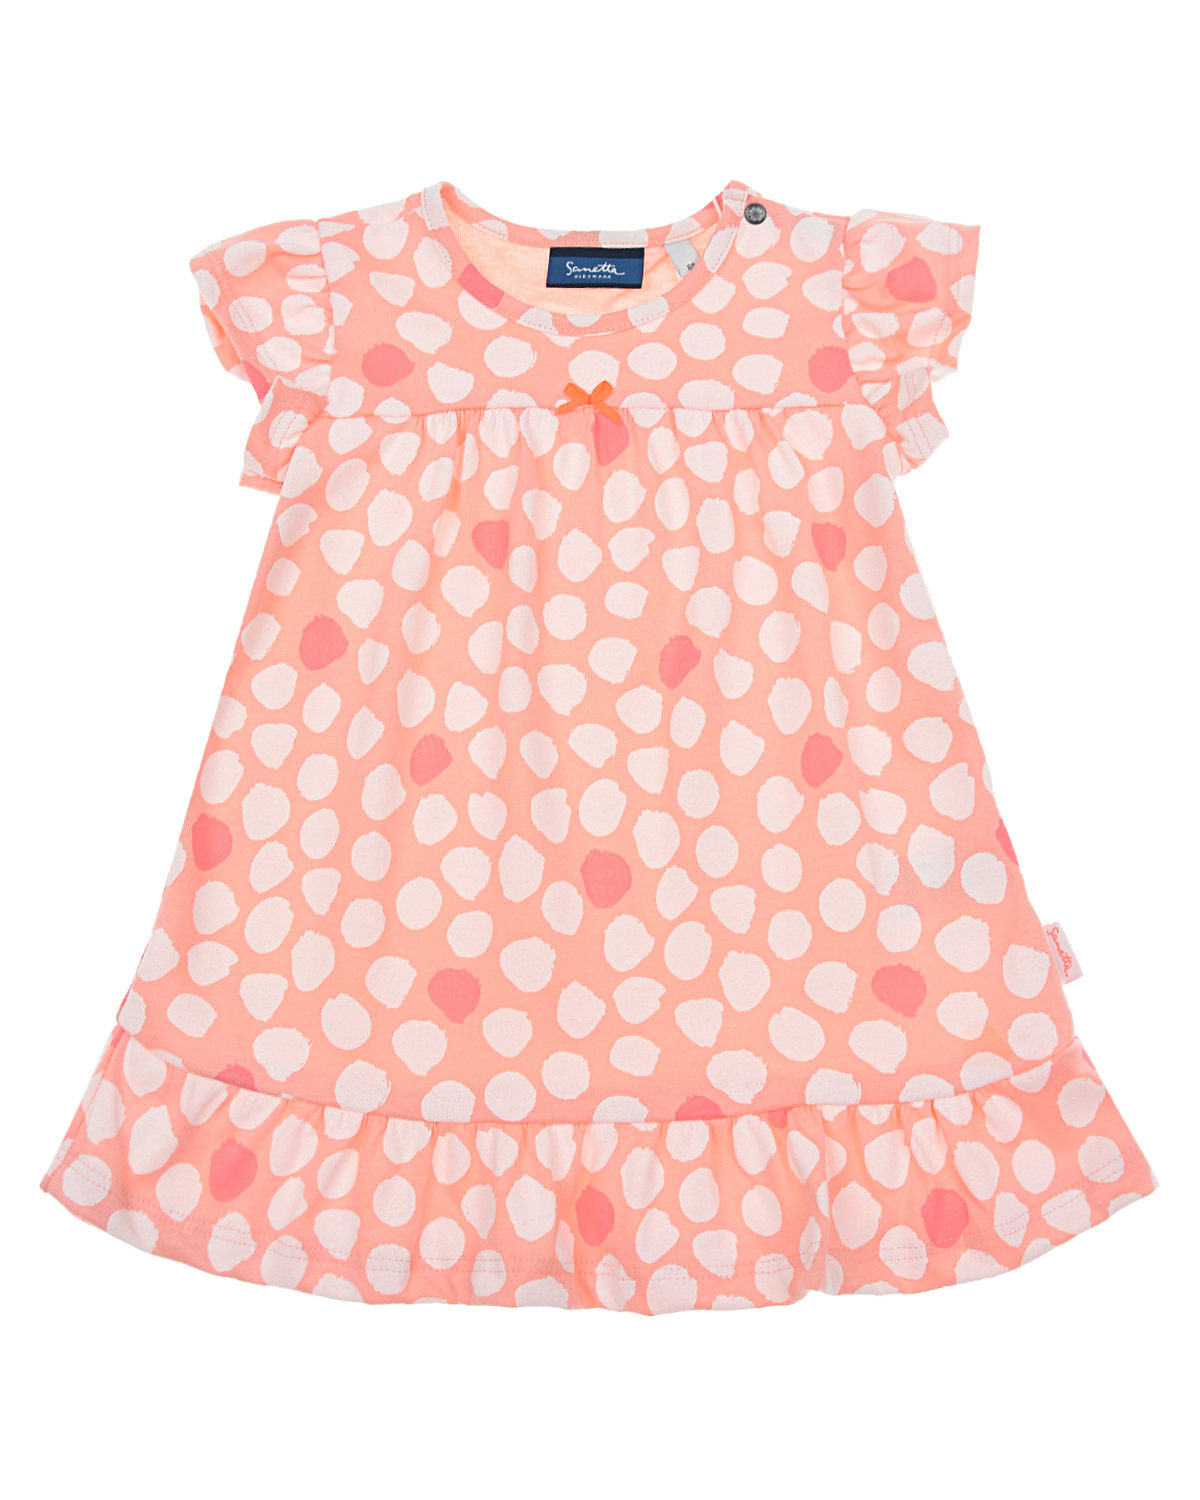 Платье персикового цвета с принтом в горошек Sanetta Kidswear детское, размер 68 - фото 1